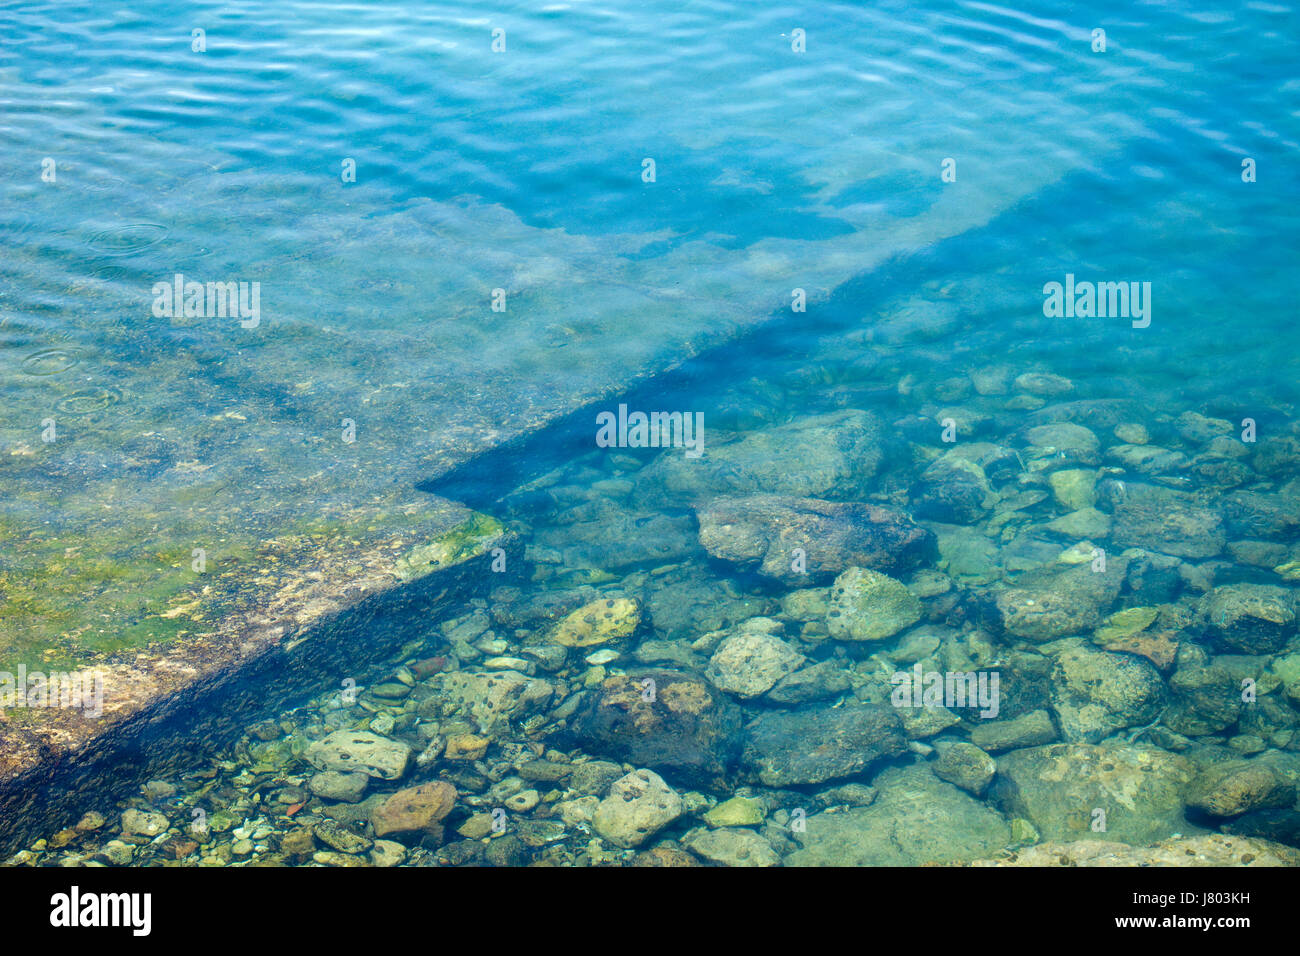 Bild von einem Schritt und Steinen unter Wasser Stockfoto